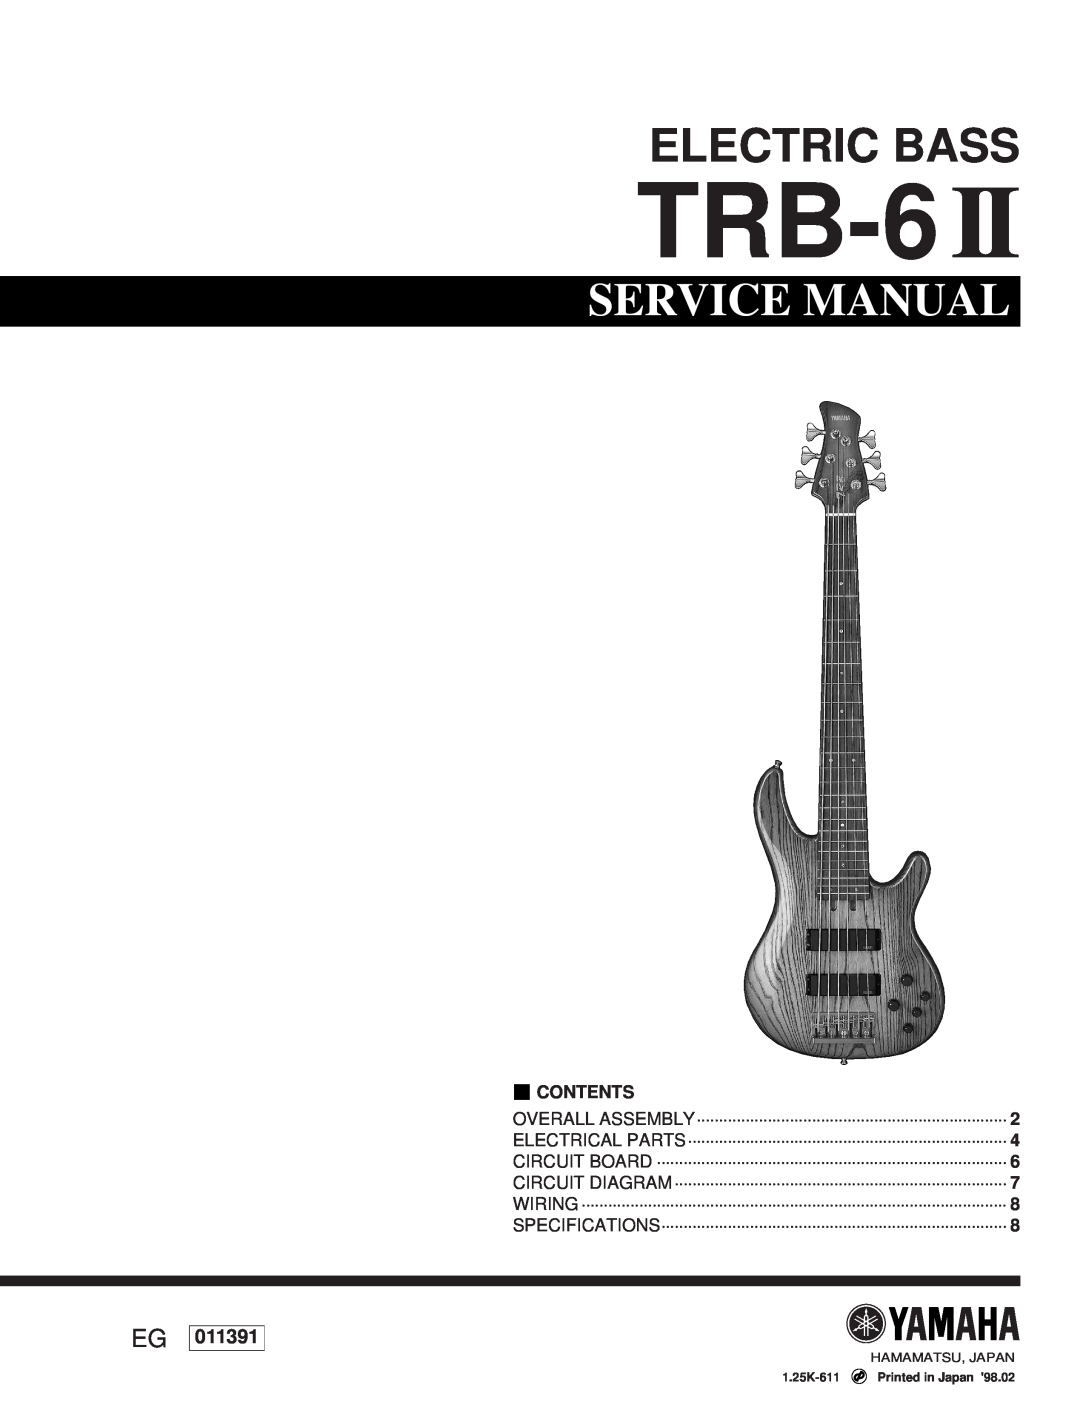 Yamaha ELECTIC BASS TRB-6 2 service manual Contents, Electric Bass, Service Manual, 011391 